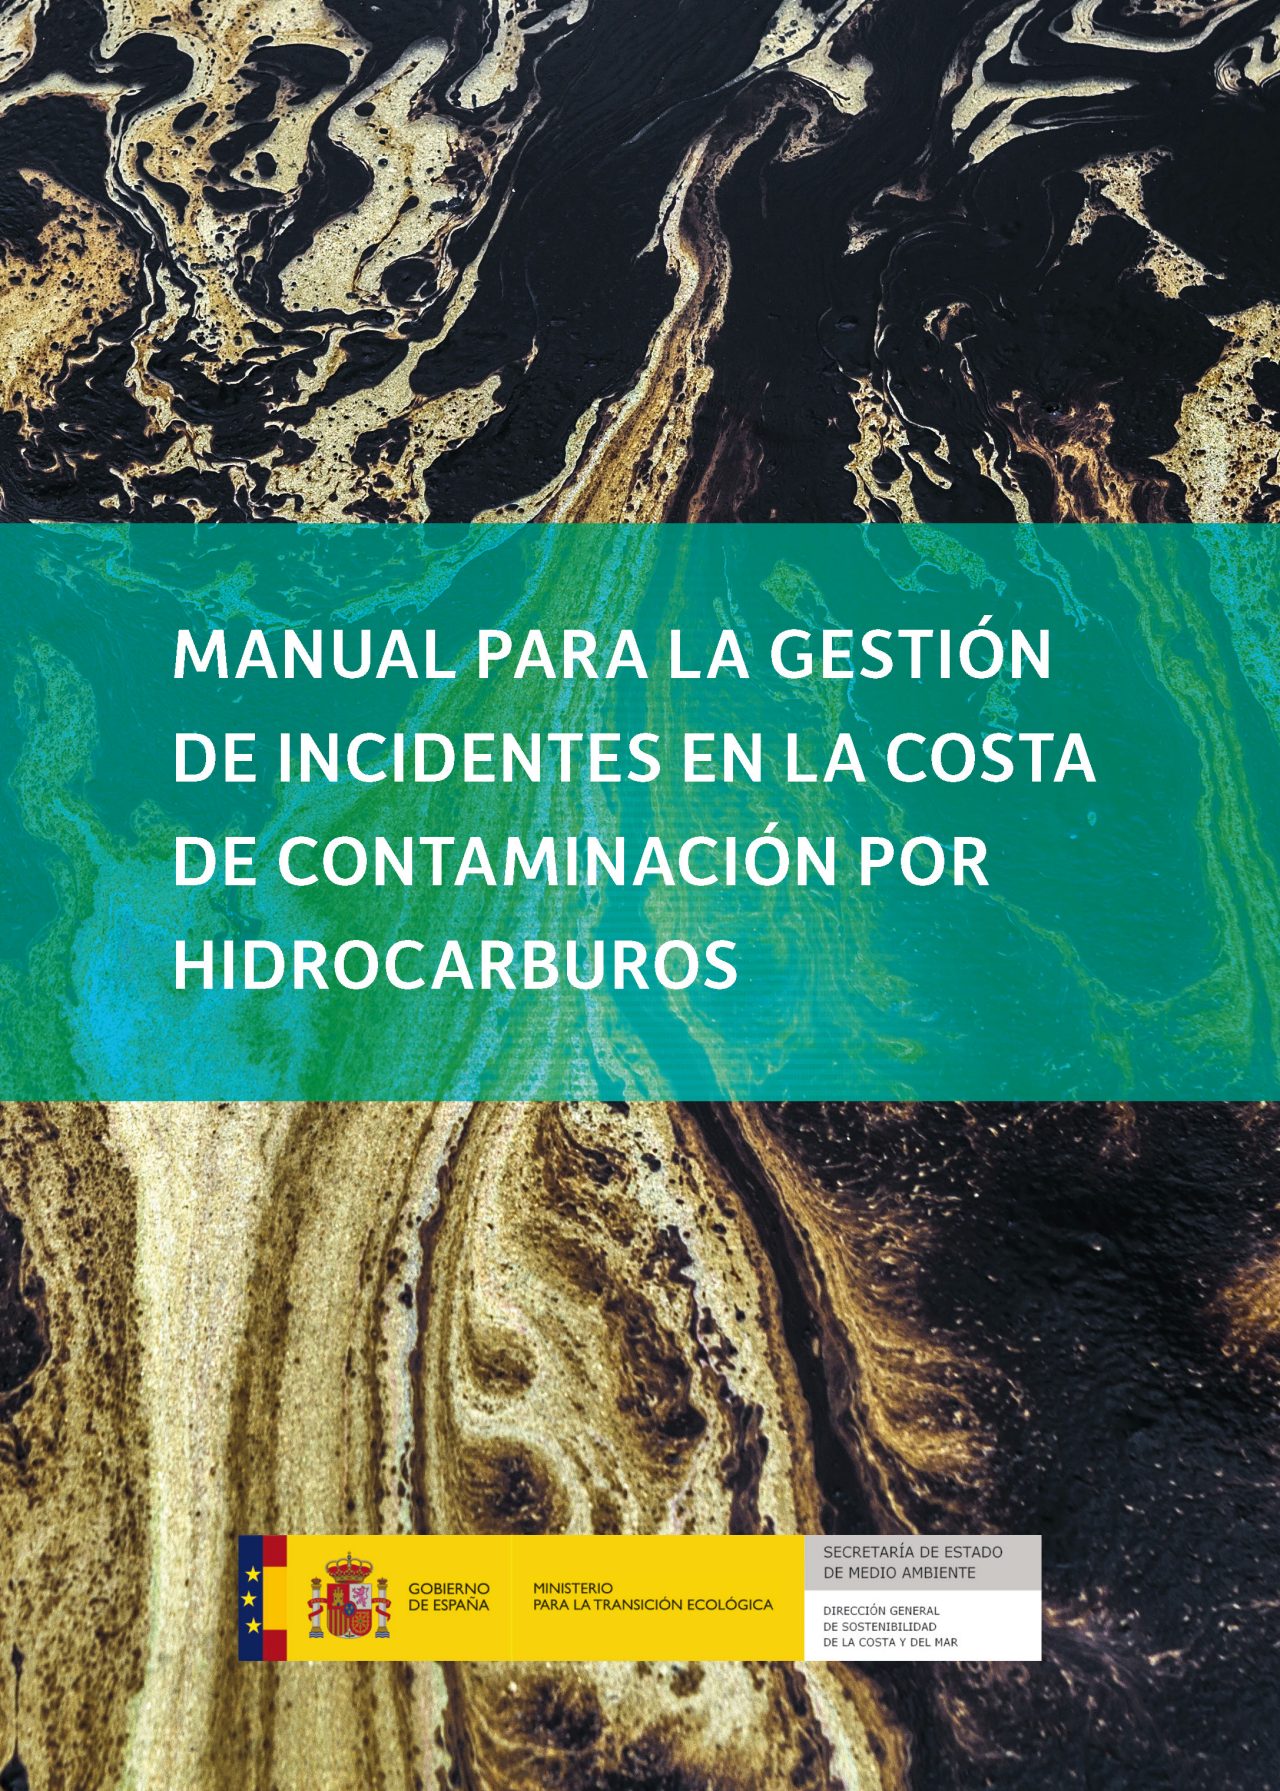 Manual para la gestión de incidentes en la costa de contaminación por hidrocarburos